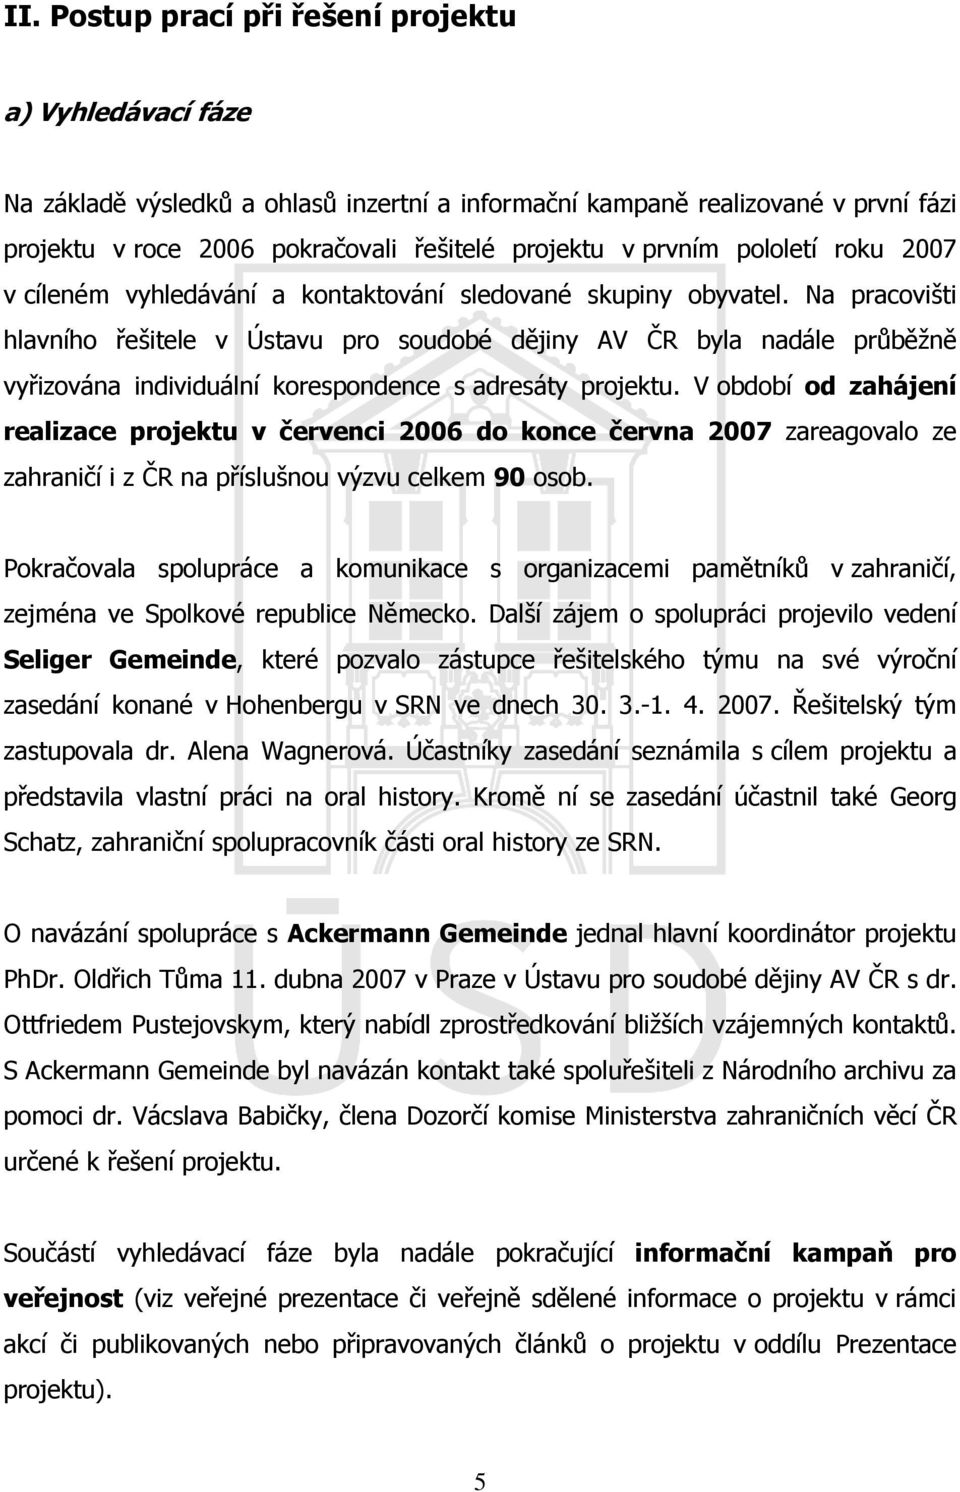 Na pracovišti hlavního řešitele v Ústavu pro soudobé dějiny AV ČR byla nadále průběžně vyřizována individuální korespondence s adresáty projektu.